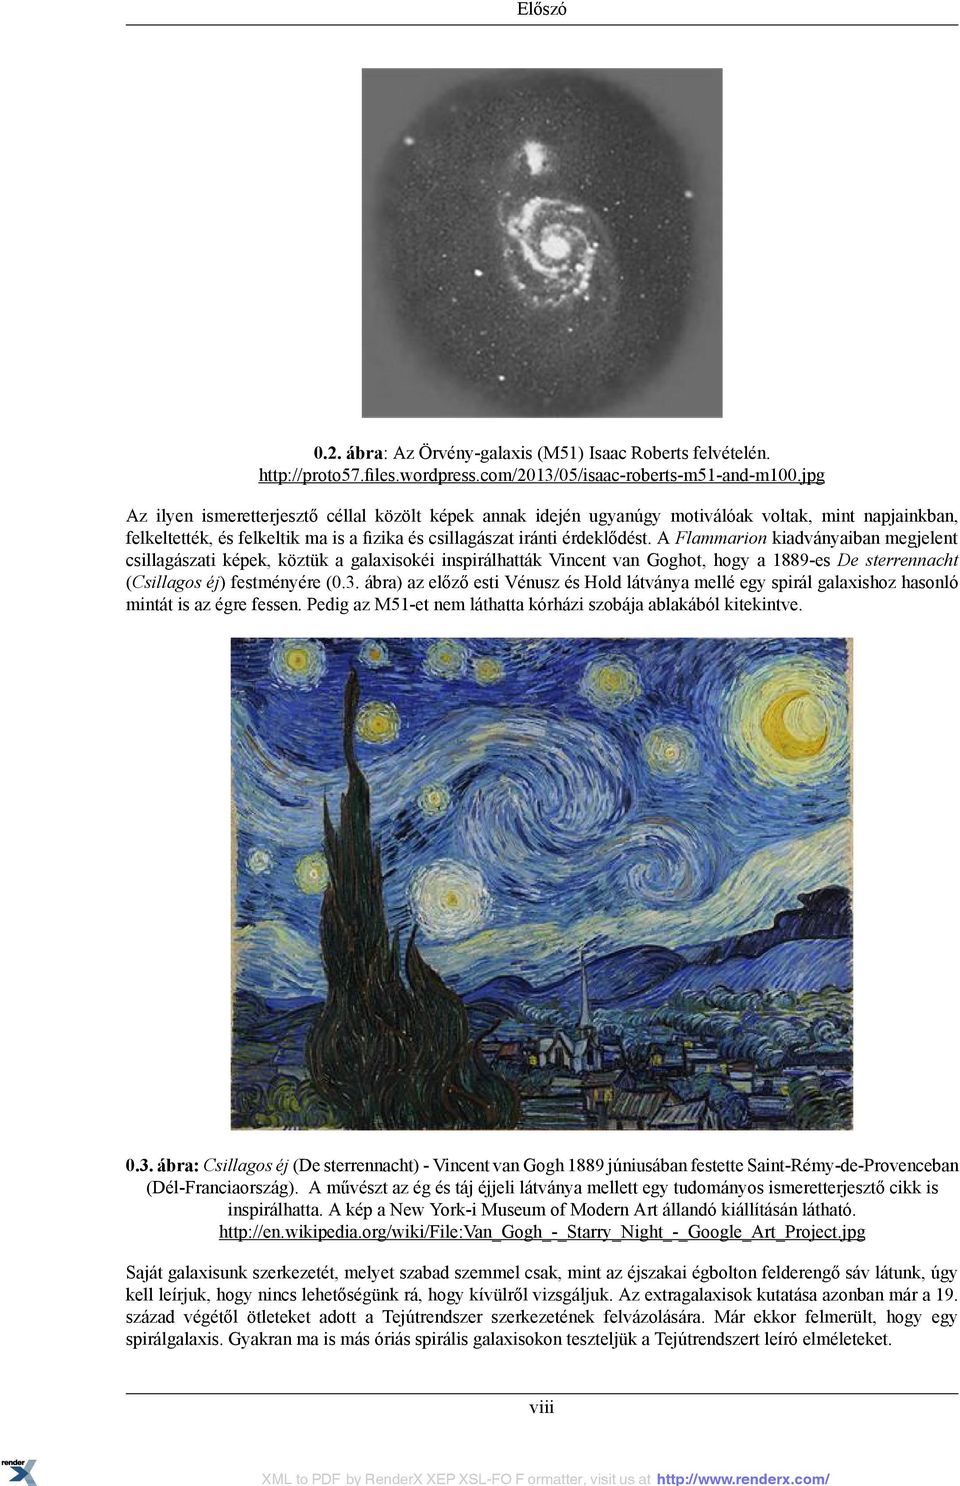 A Flammarion kiadványaiban megjelent csillagászati képek, köztük a galaxisokéi inspirálhatták Vincent van Goghot, hogy a 1889-es De sterrennacht (Csillagos éj) festményére (0.3.